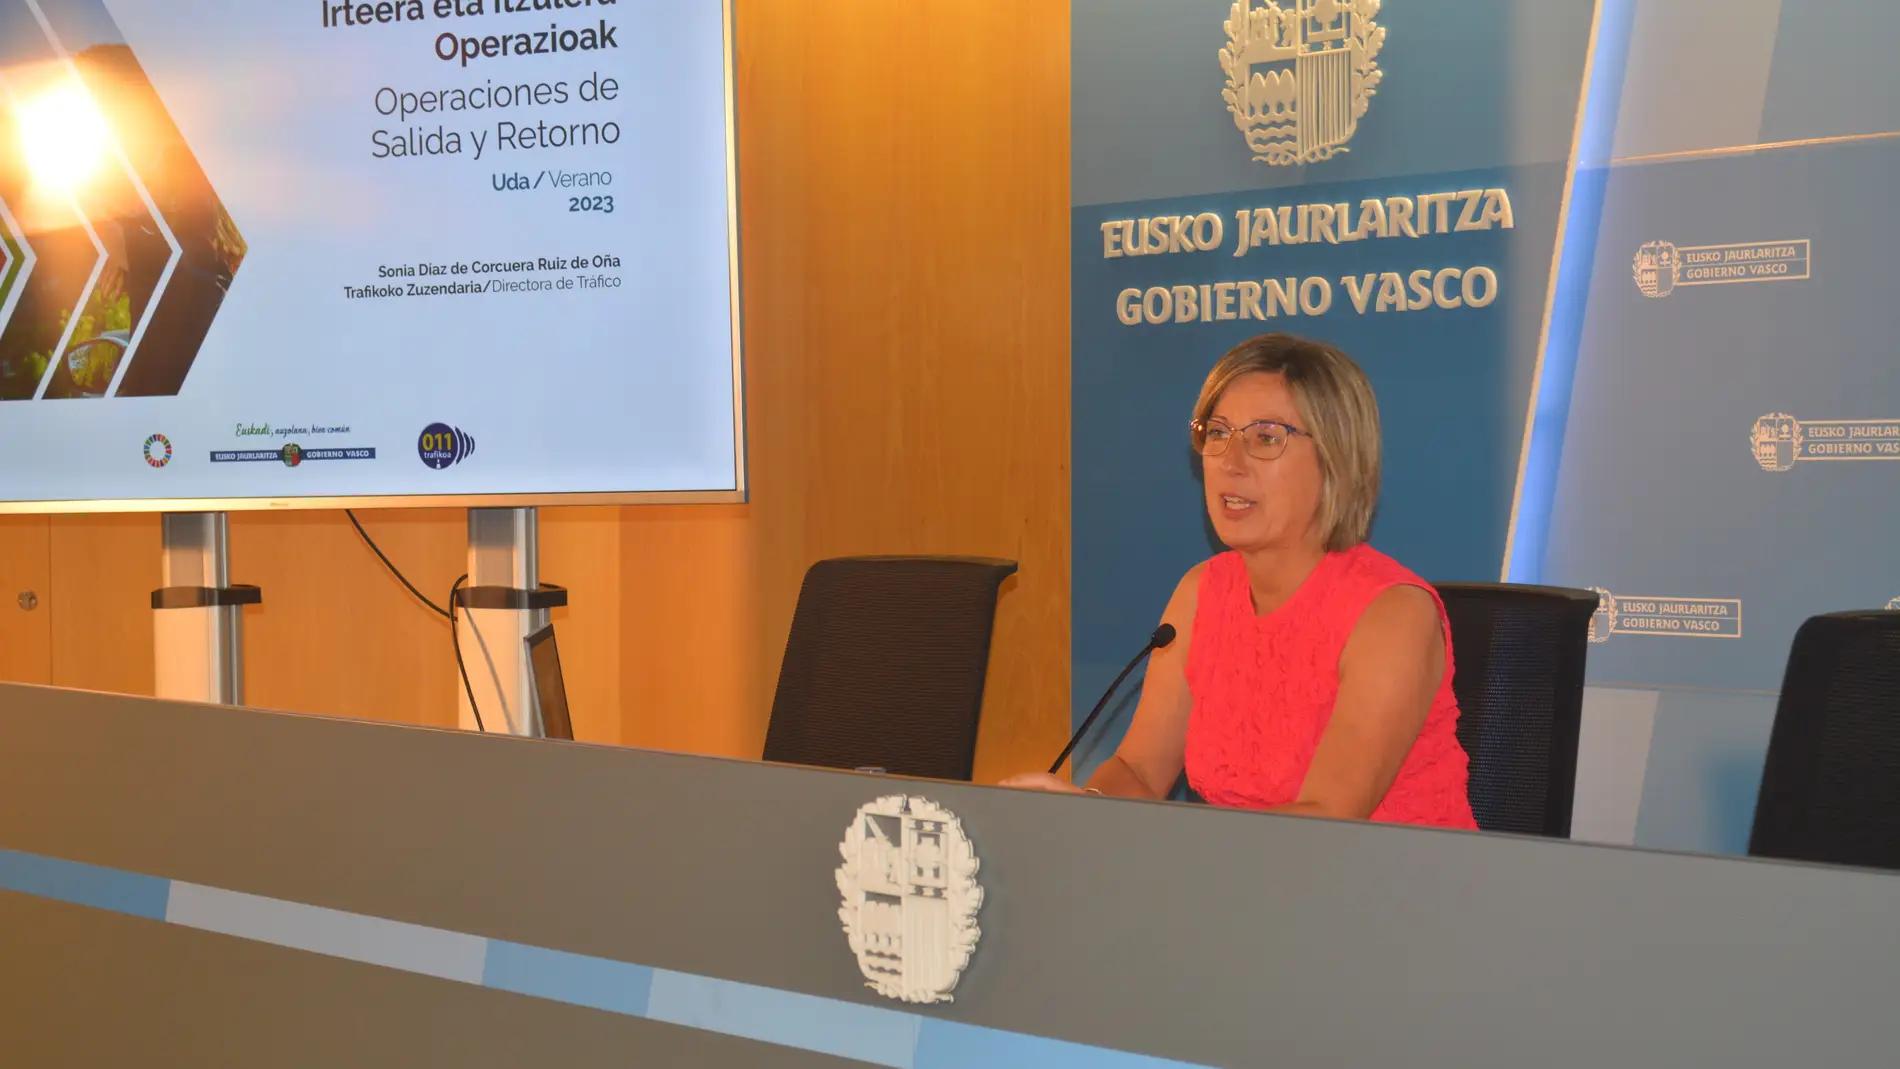 Sonia Diaz de Corcuera, Directora de Tráfico del Gobierno Vasco 